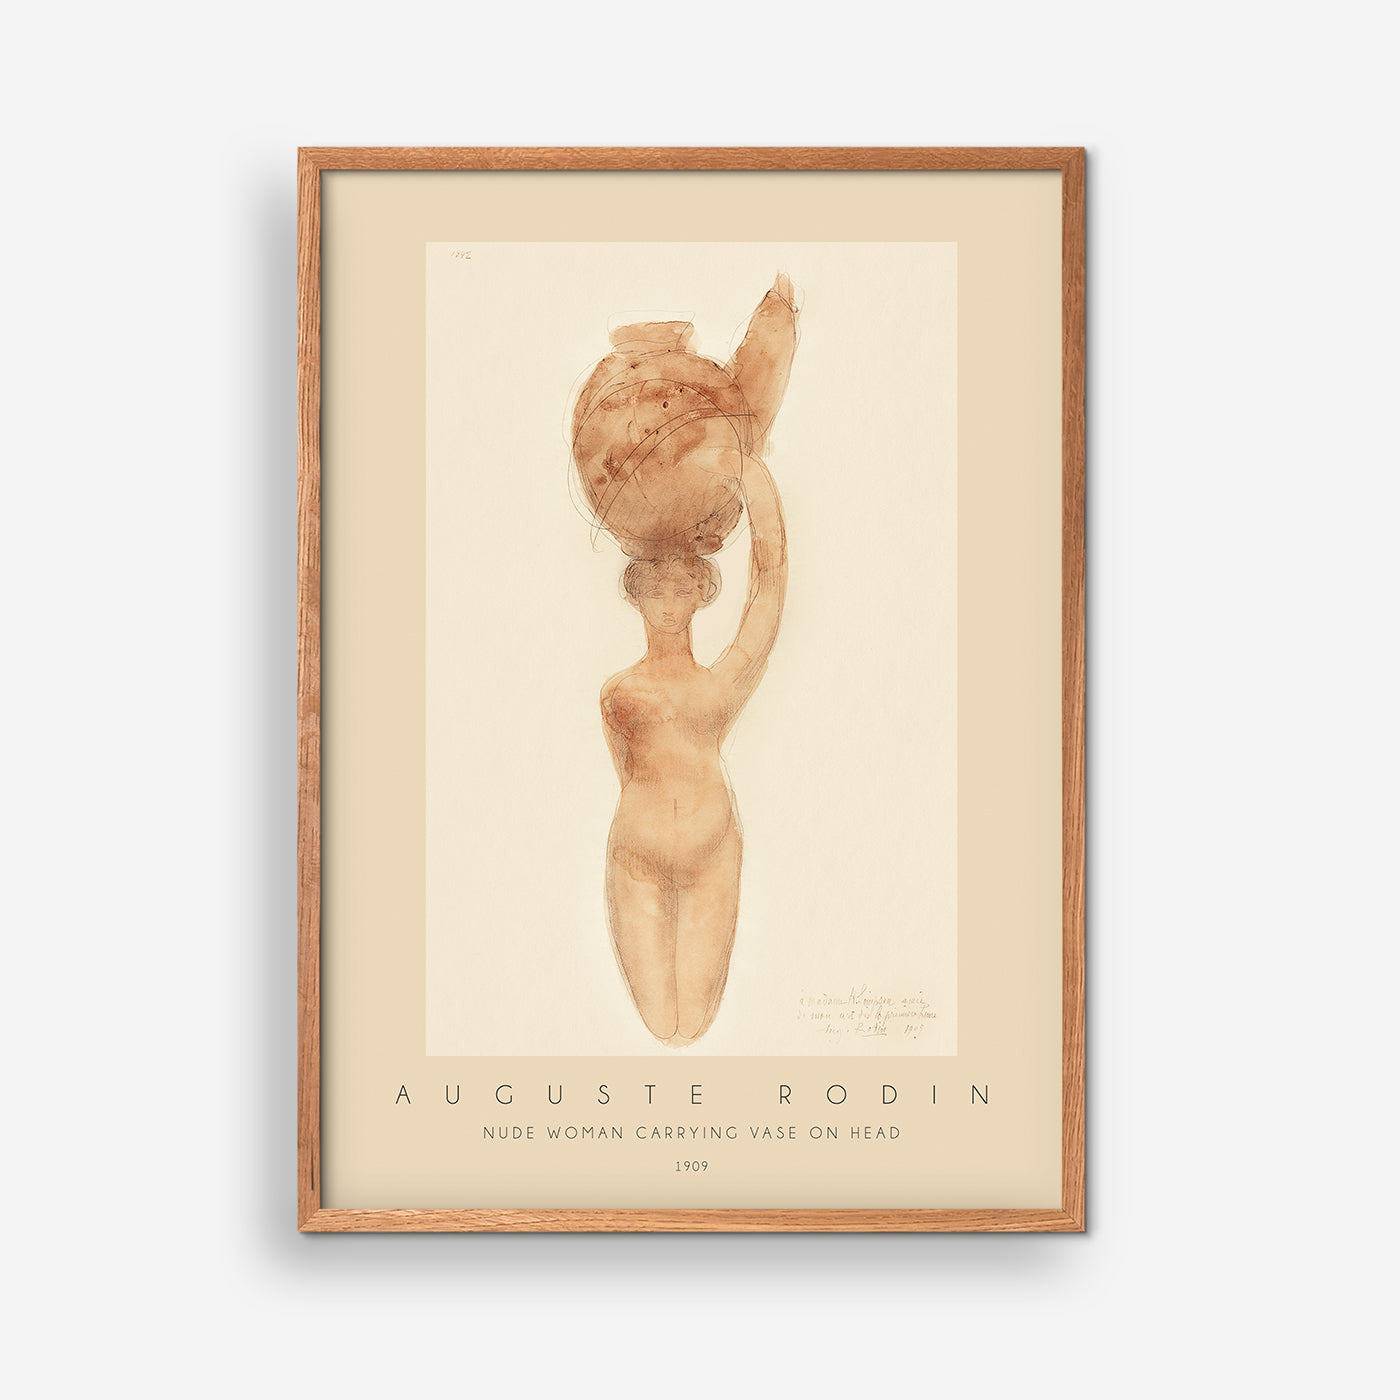 Nackte Frau mit Vase auf dem Kopf - Rodin